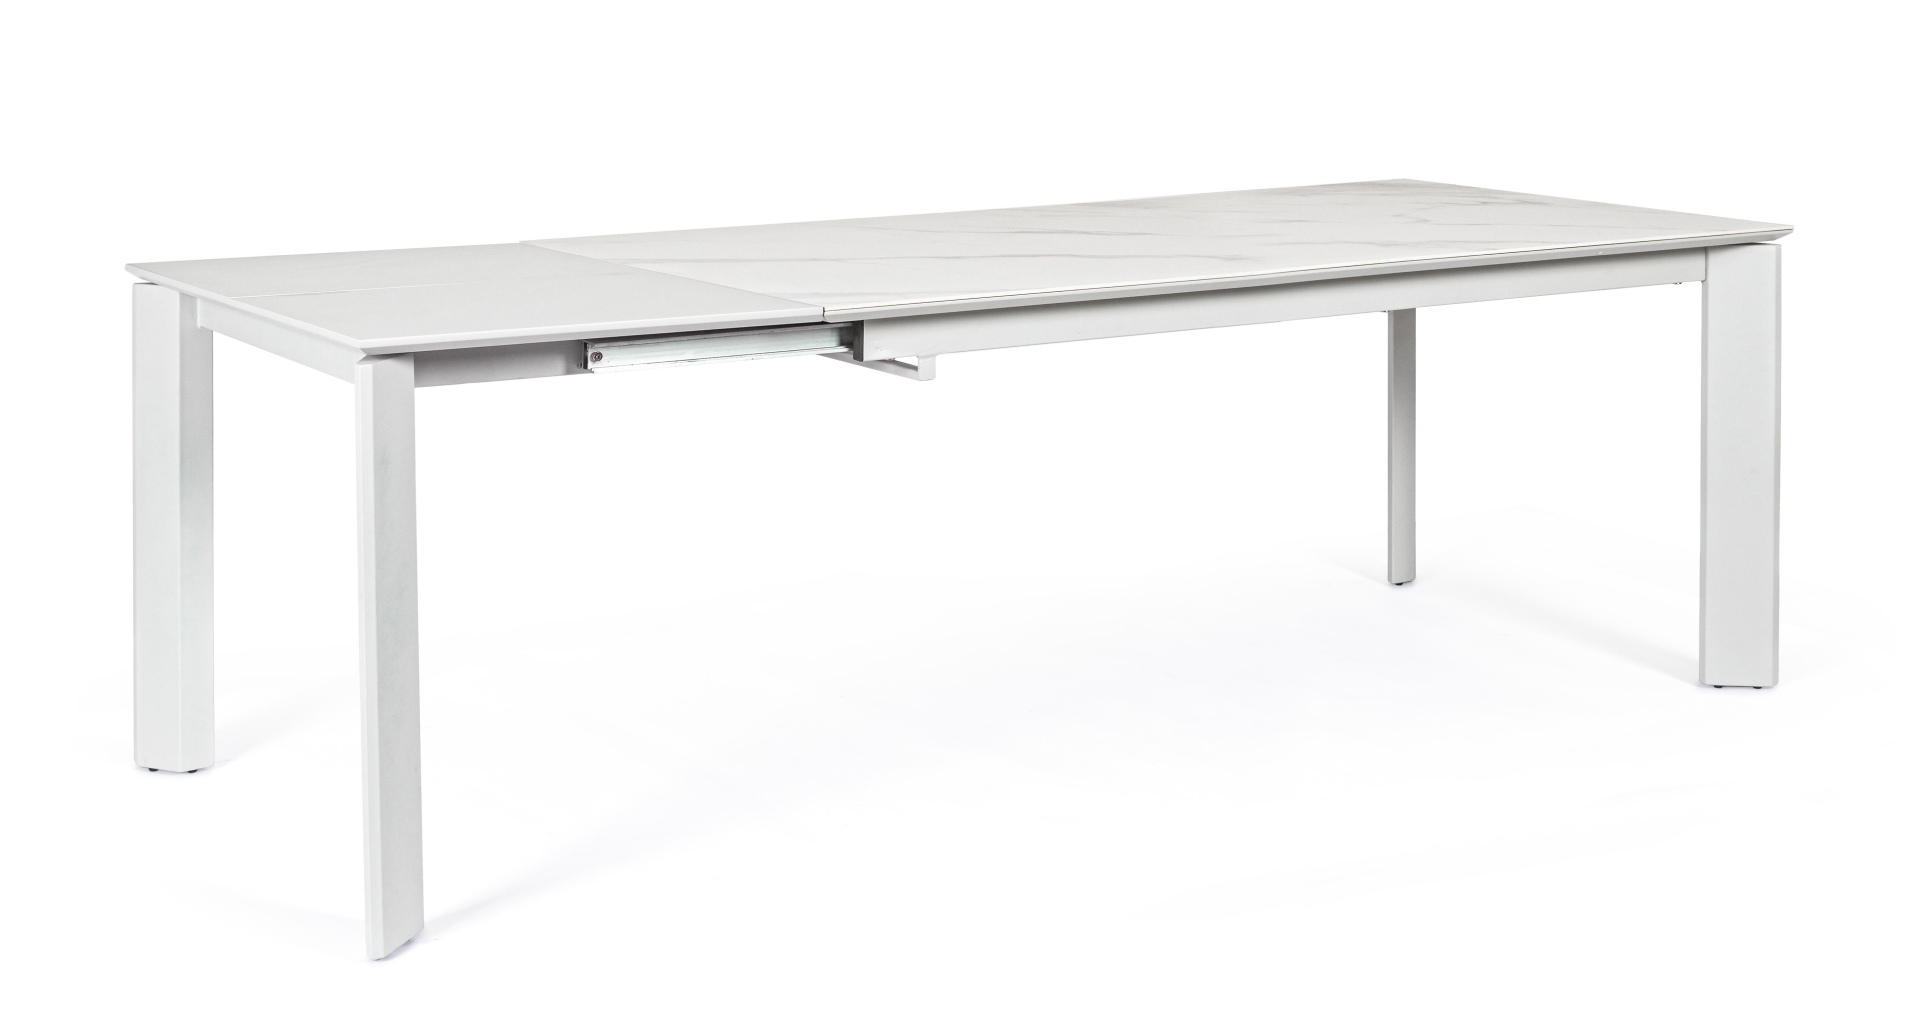 Der Esstisch Briva überzeugt mit seinem moderndem Design. Gefertigt wurde er aus Keramik, welches einen weiße Farbton besitzt. Das Gestell des Tisches ist aus Metall und hat eine hellgraue Farbe. Der Tisch ist ausziehbar von einer Breite von 160 cm auf 22